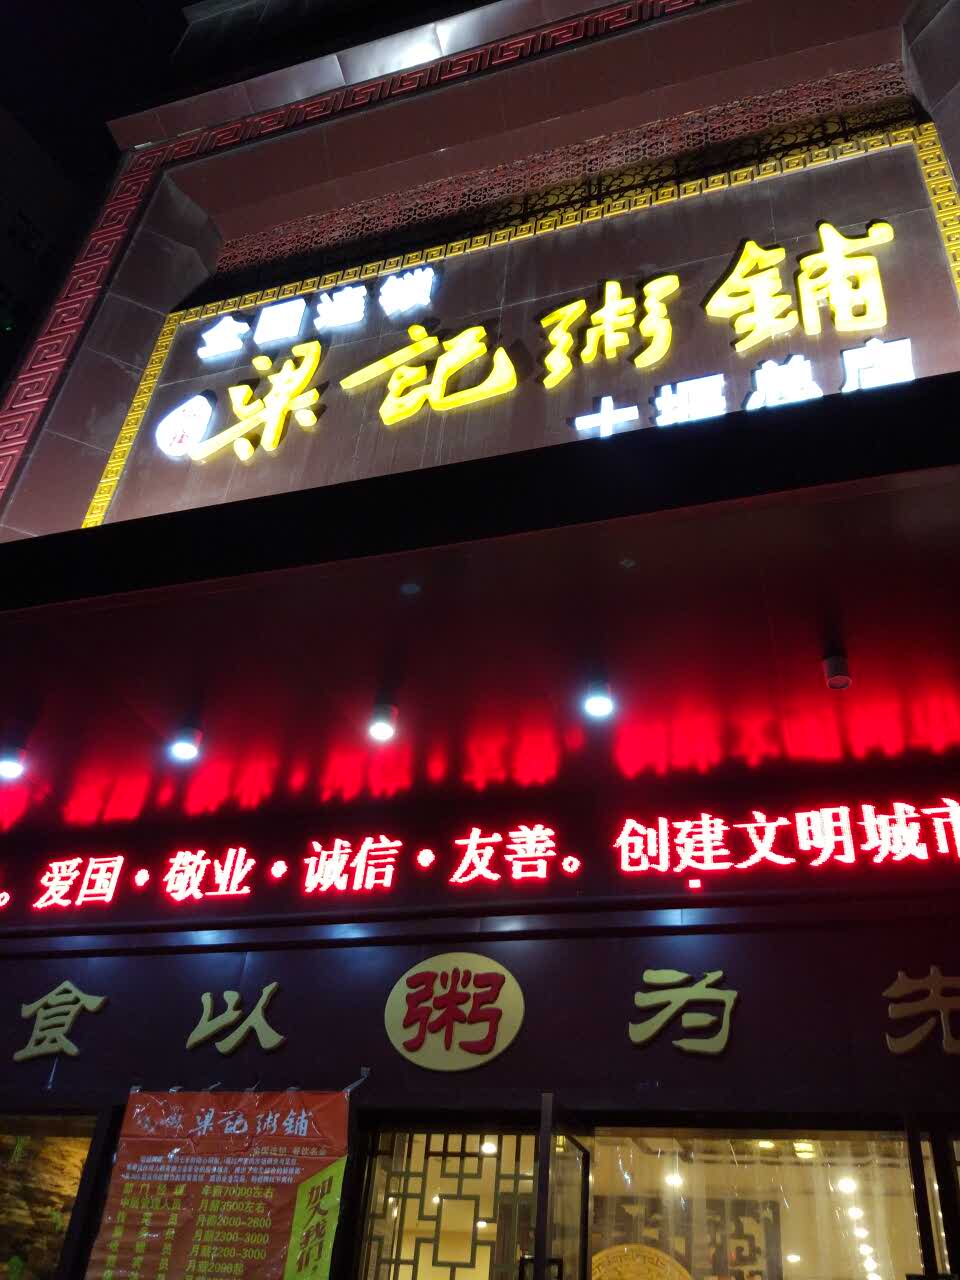 2022梁记粥铺(北京路店)美食餐厅,还可以吧 价格偏贵 真的 味